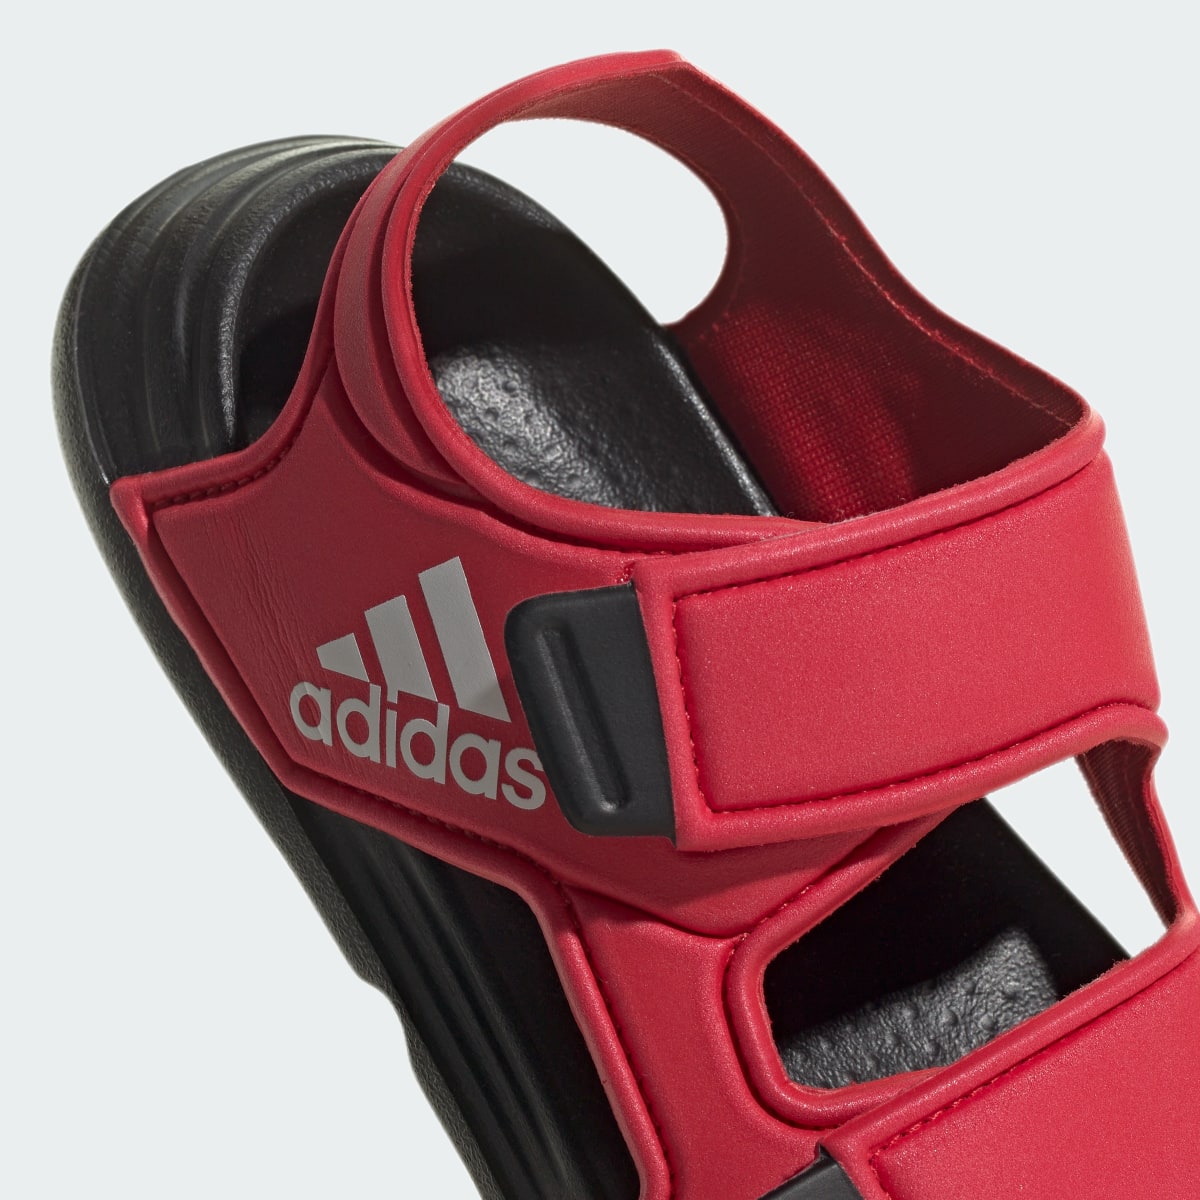 Adidas Altaswim Sandals. 9